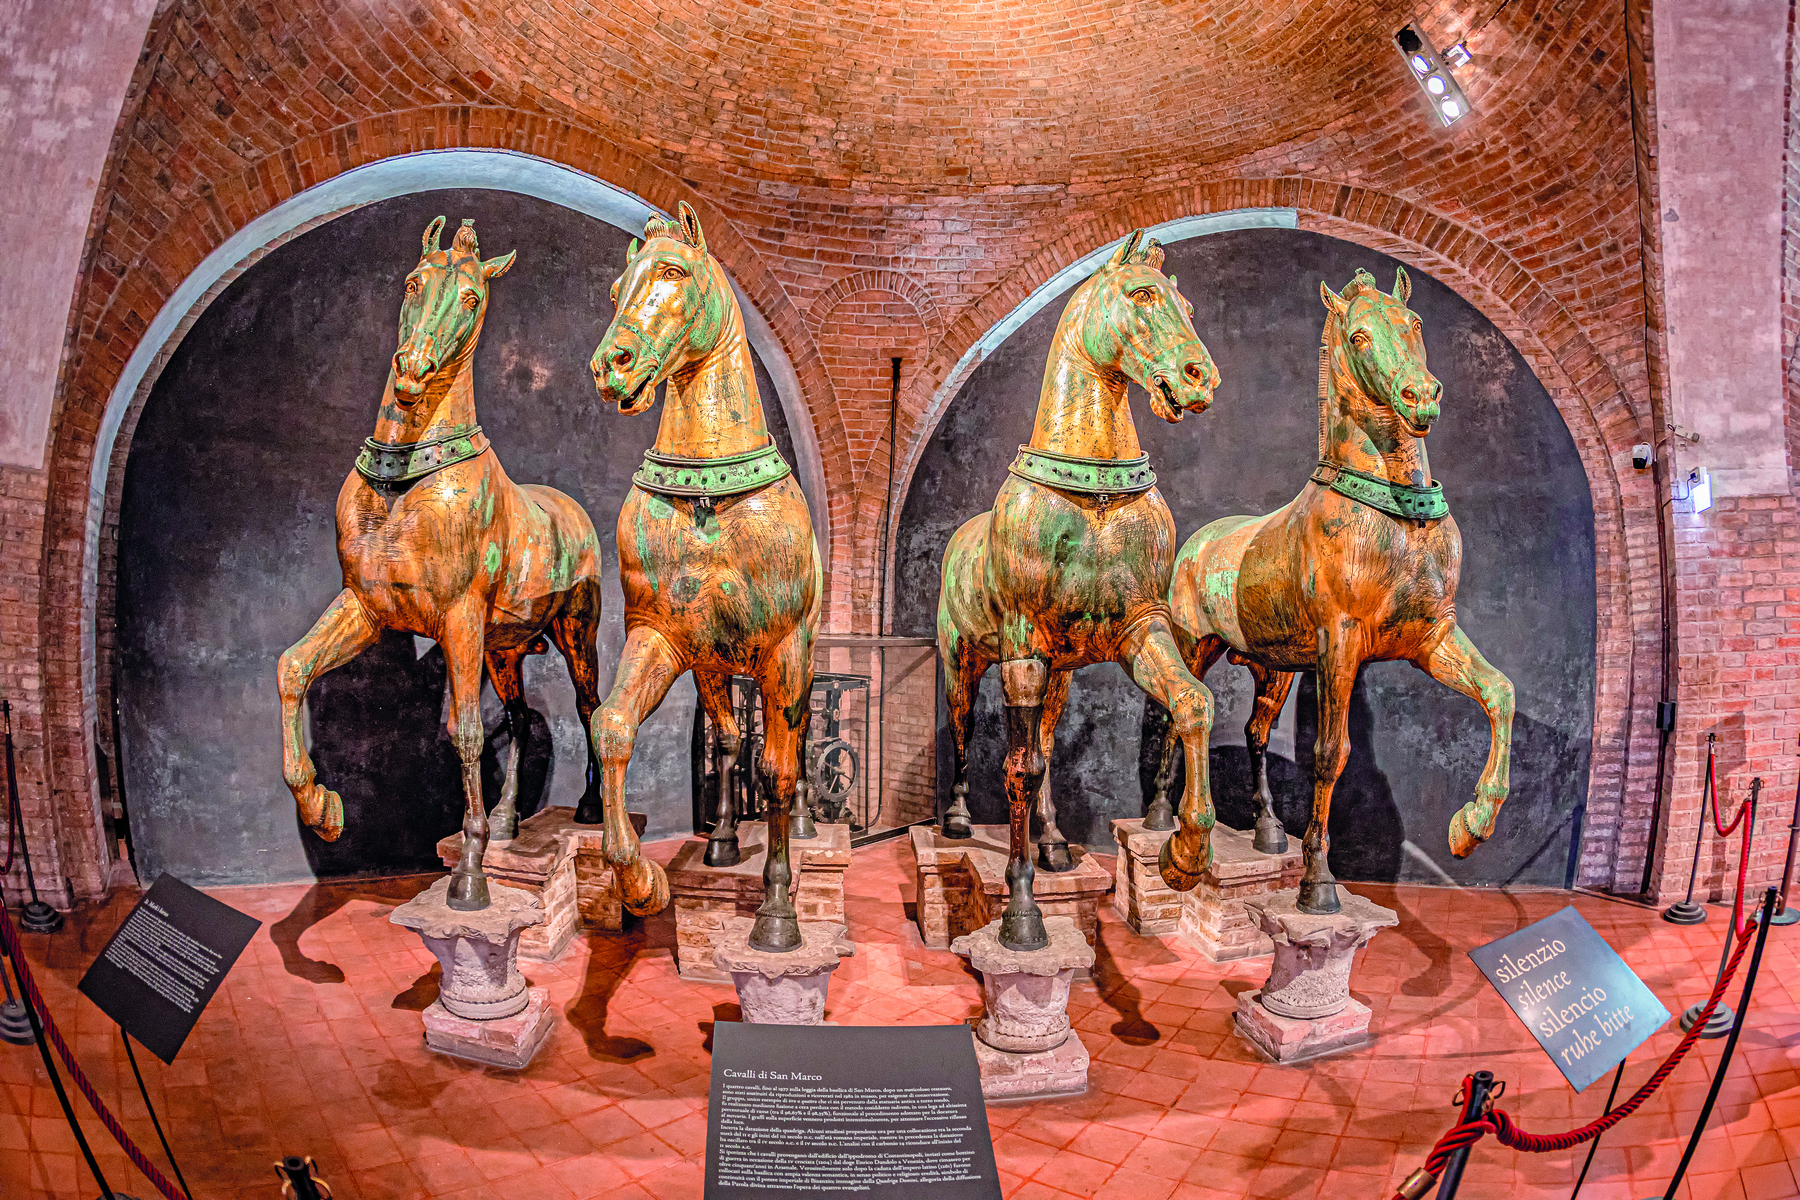 Esculturas. Quatro cavalos metálicos em exposição. Estão lado a lado, com as patas em suportes no chão. Ao fundo, paredes de tijolos.